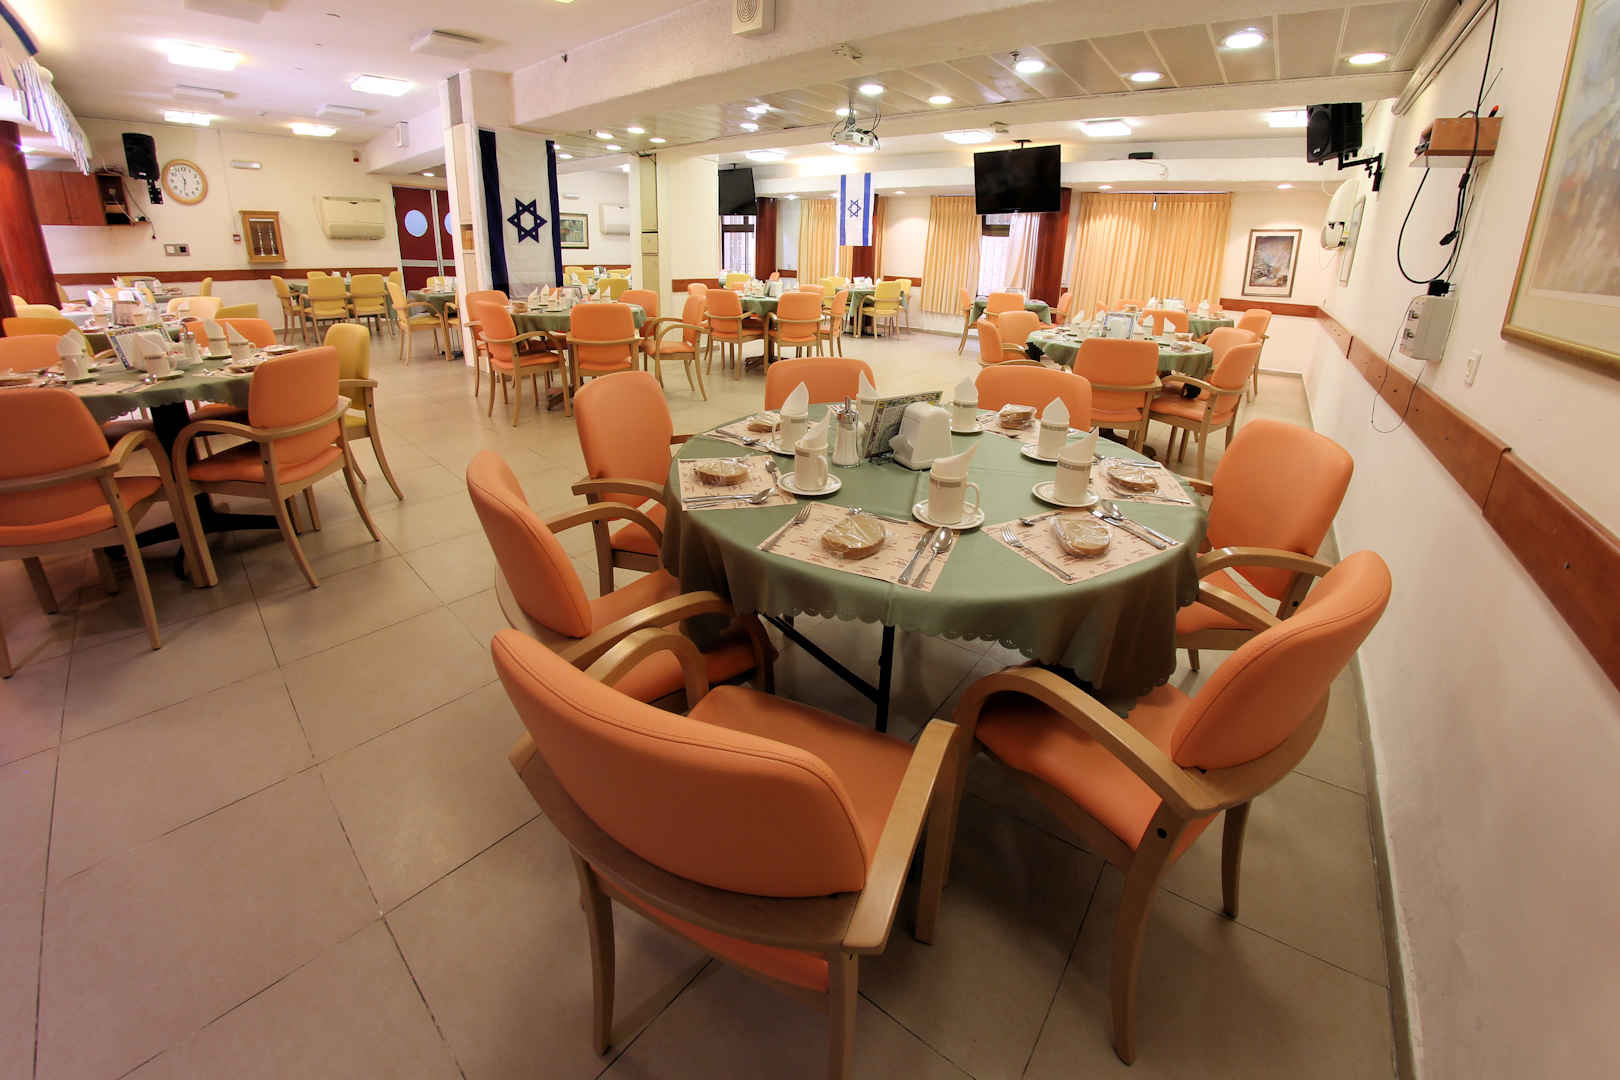 
						בית ברט – דיור מוגן דתי-לאומי בירושלים חדר אוכל					